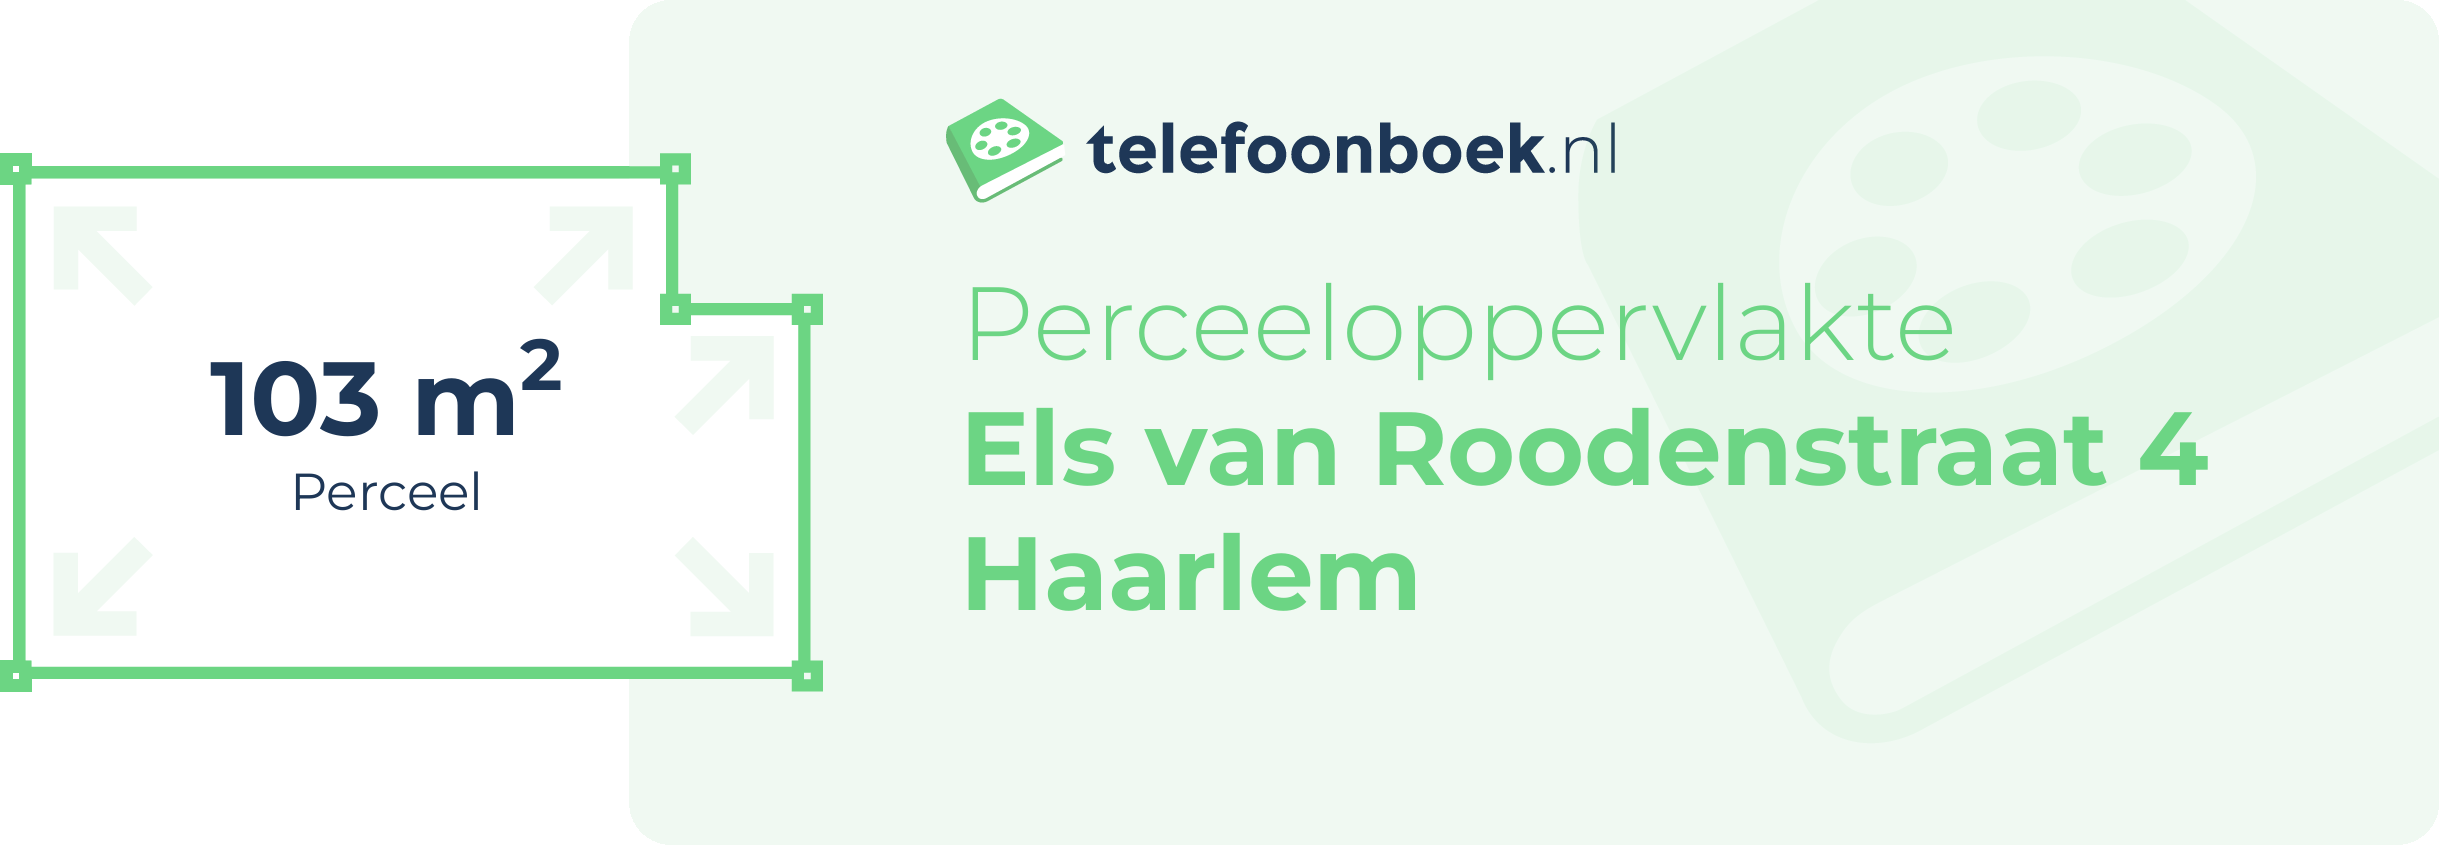 Perceeloppervlakte Els Van Roodenstraat 4 Haarlem